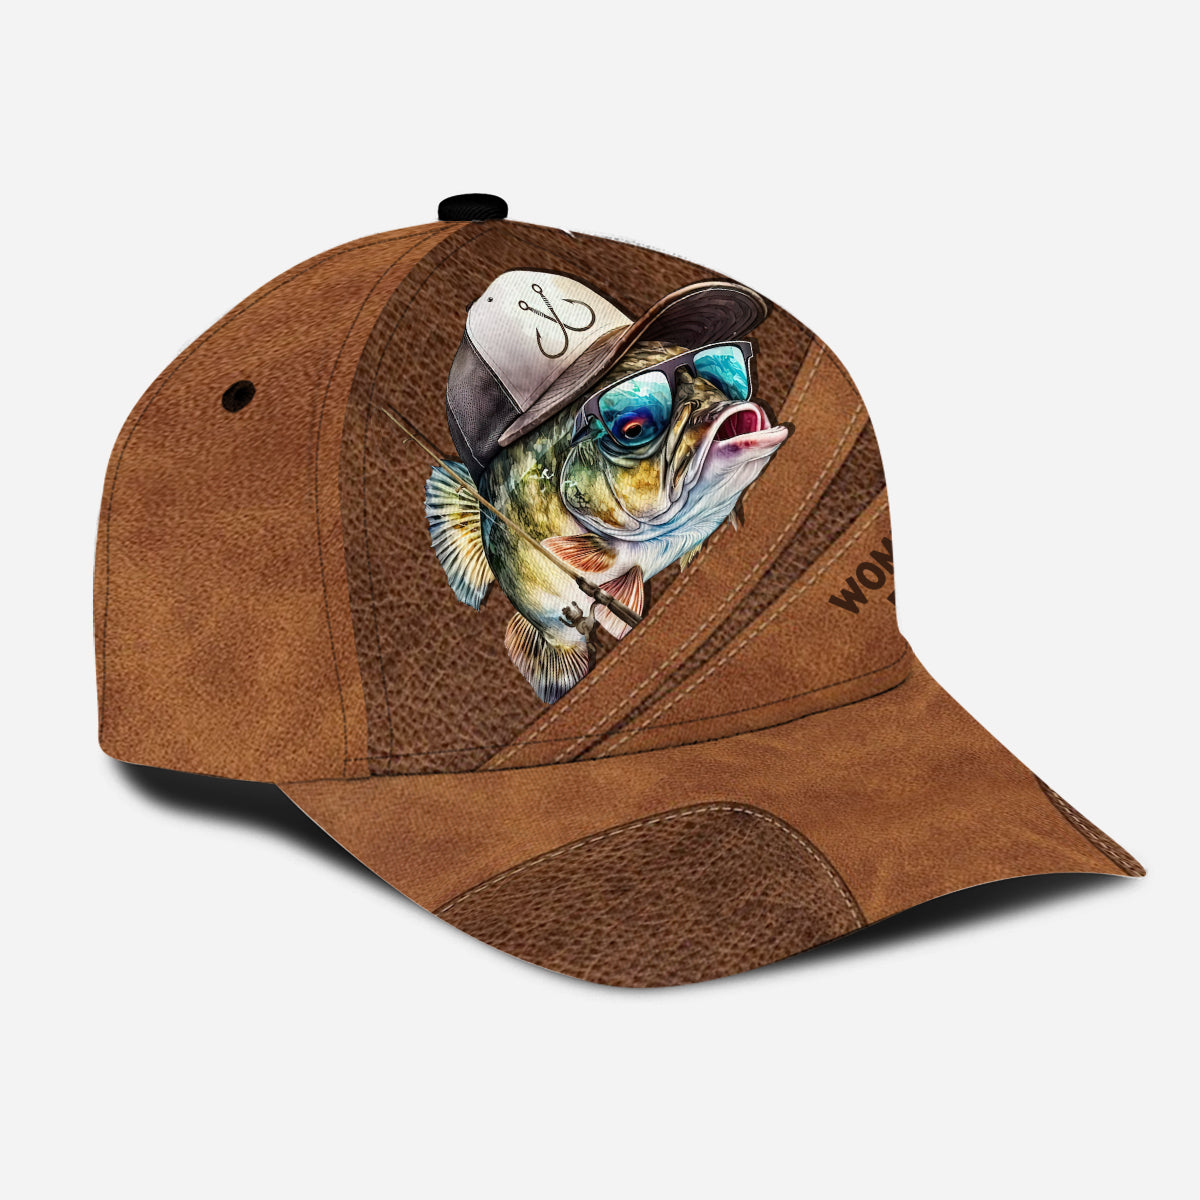 Women Want Me Fish Fear Me - Funny Fishing Hat - Dad / Husband Gift - Fisherman Gift - Fishing Gift - Bass Fishing - Fishing Captain Hat